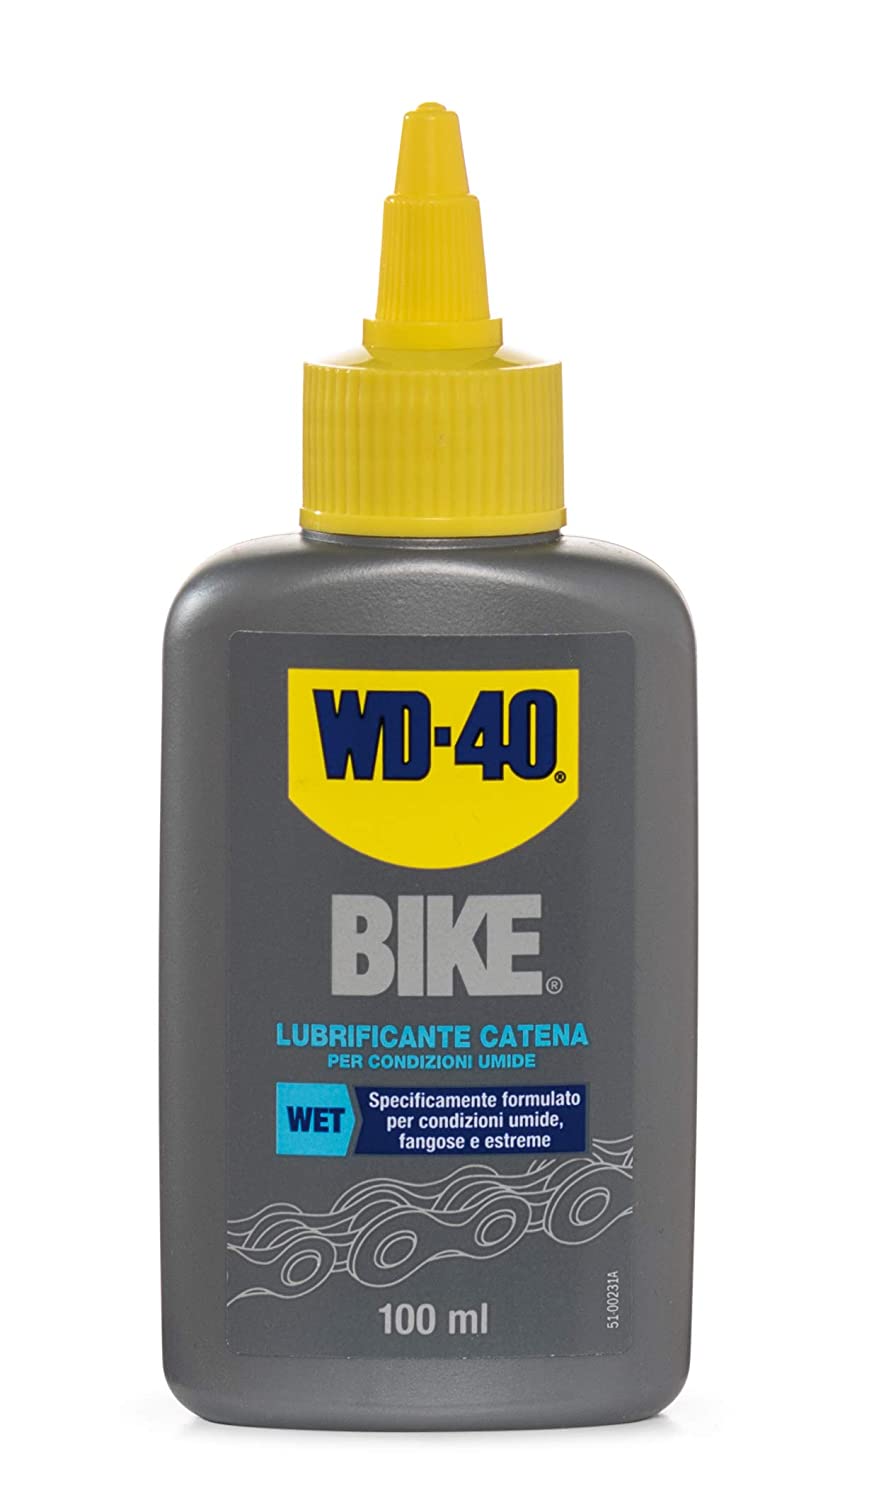 WD-40 Bike - Lubrificante Catena Bici e MTB per Condizioni Umide - 100 ml